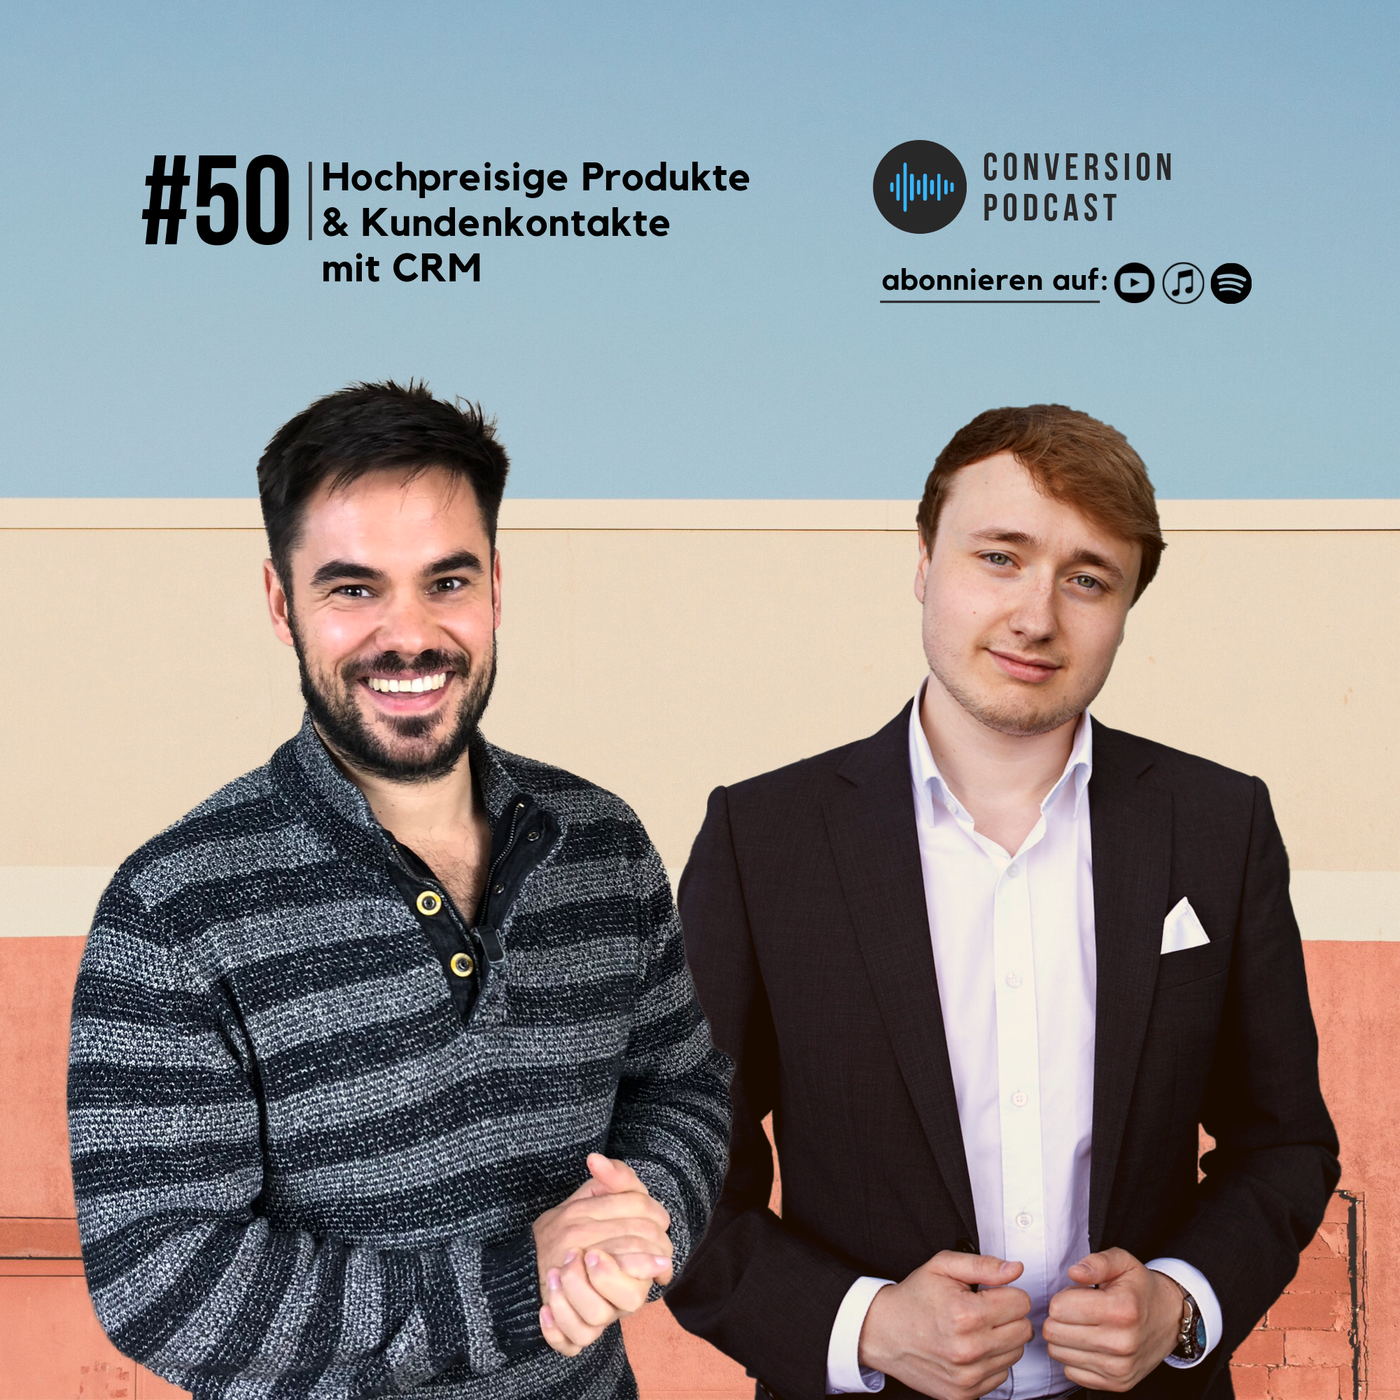 Hochpreisige Produkte & Kundenkontakte mit CRM | #50 Conversion Podcast